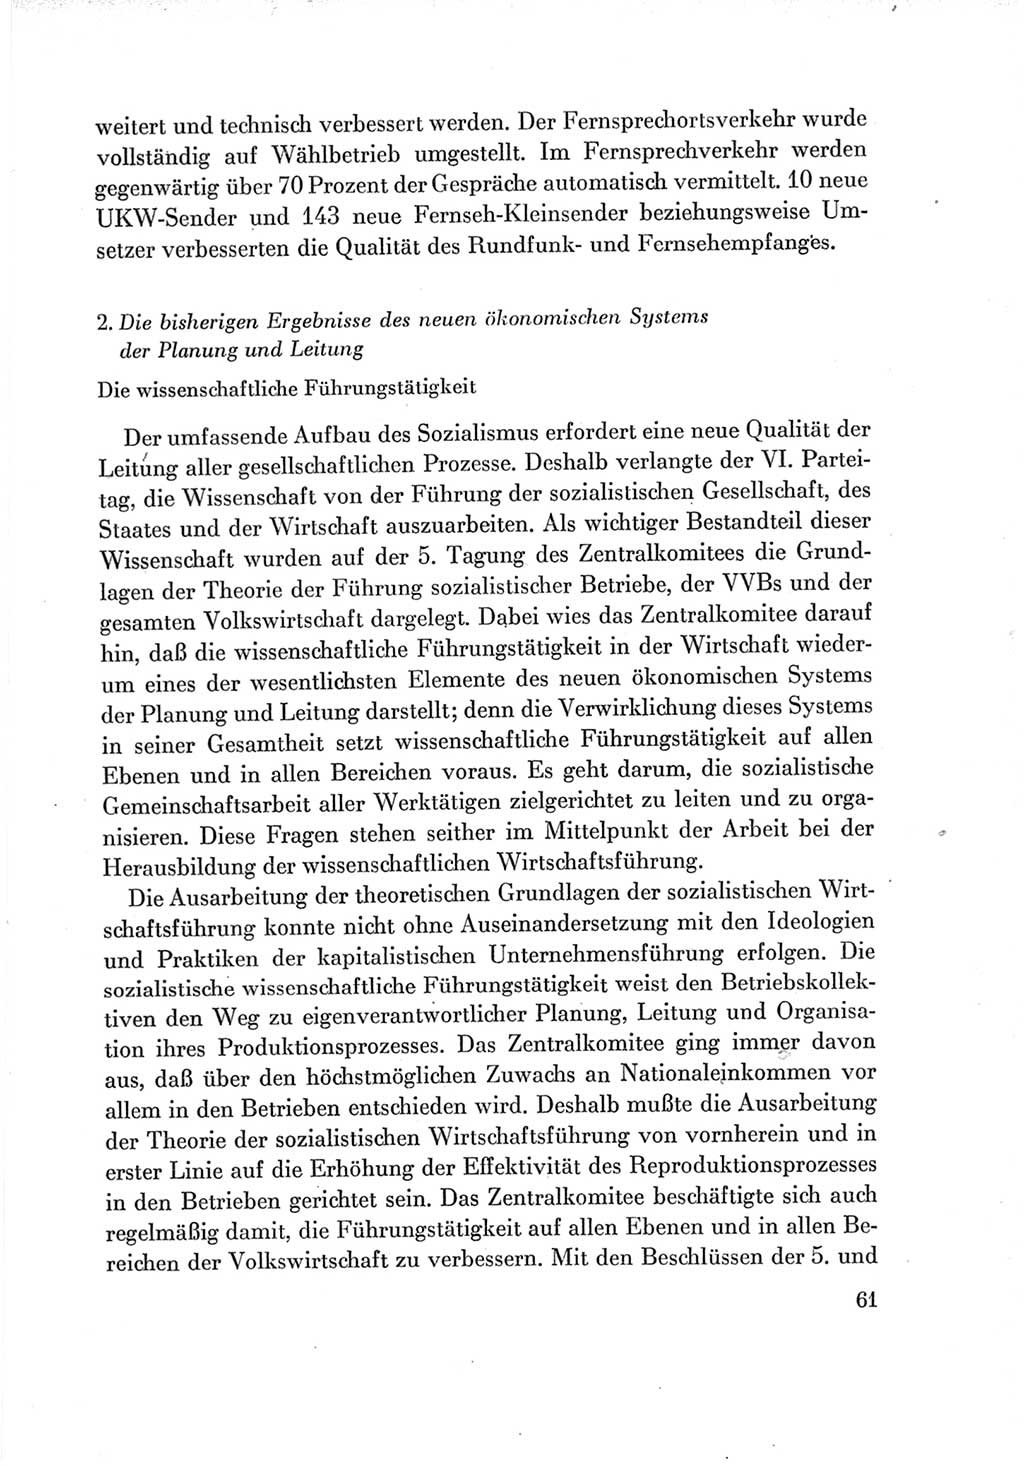 Protokoll der Verhandlungen des Ⅶ. Parteitages der Sozialistischen Einheitspartei Deutschlands (SED) [Deutsche Demokratische Republik (DDR)] 1967, Band Ⅳ, Seite 61 (Prot. Verh. Ⅶ. PT SED DDR 1967, Bd. Ⅳ, S. 61)